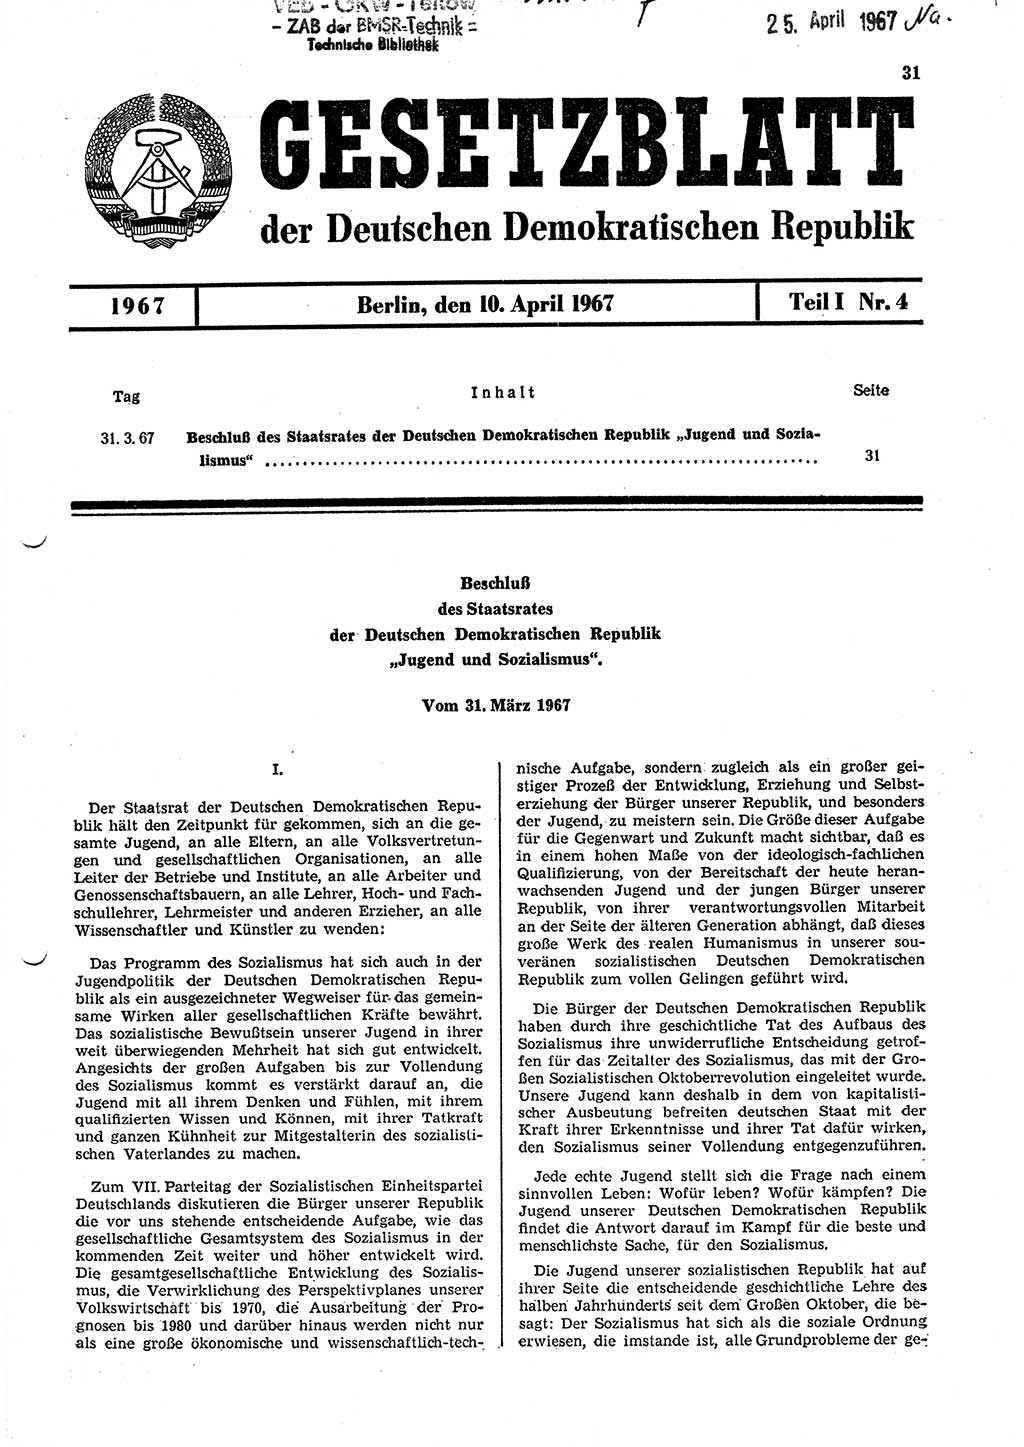 Gesetzblatt (GBl.) der Deutschen Demokratischen Republik (DDR) Teil Ⅰ 1967, Seite 31 (GBl. DDR Ⅰ 1967, S. 31)